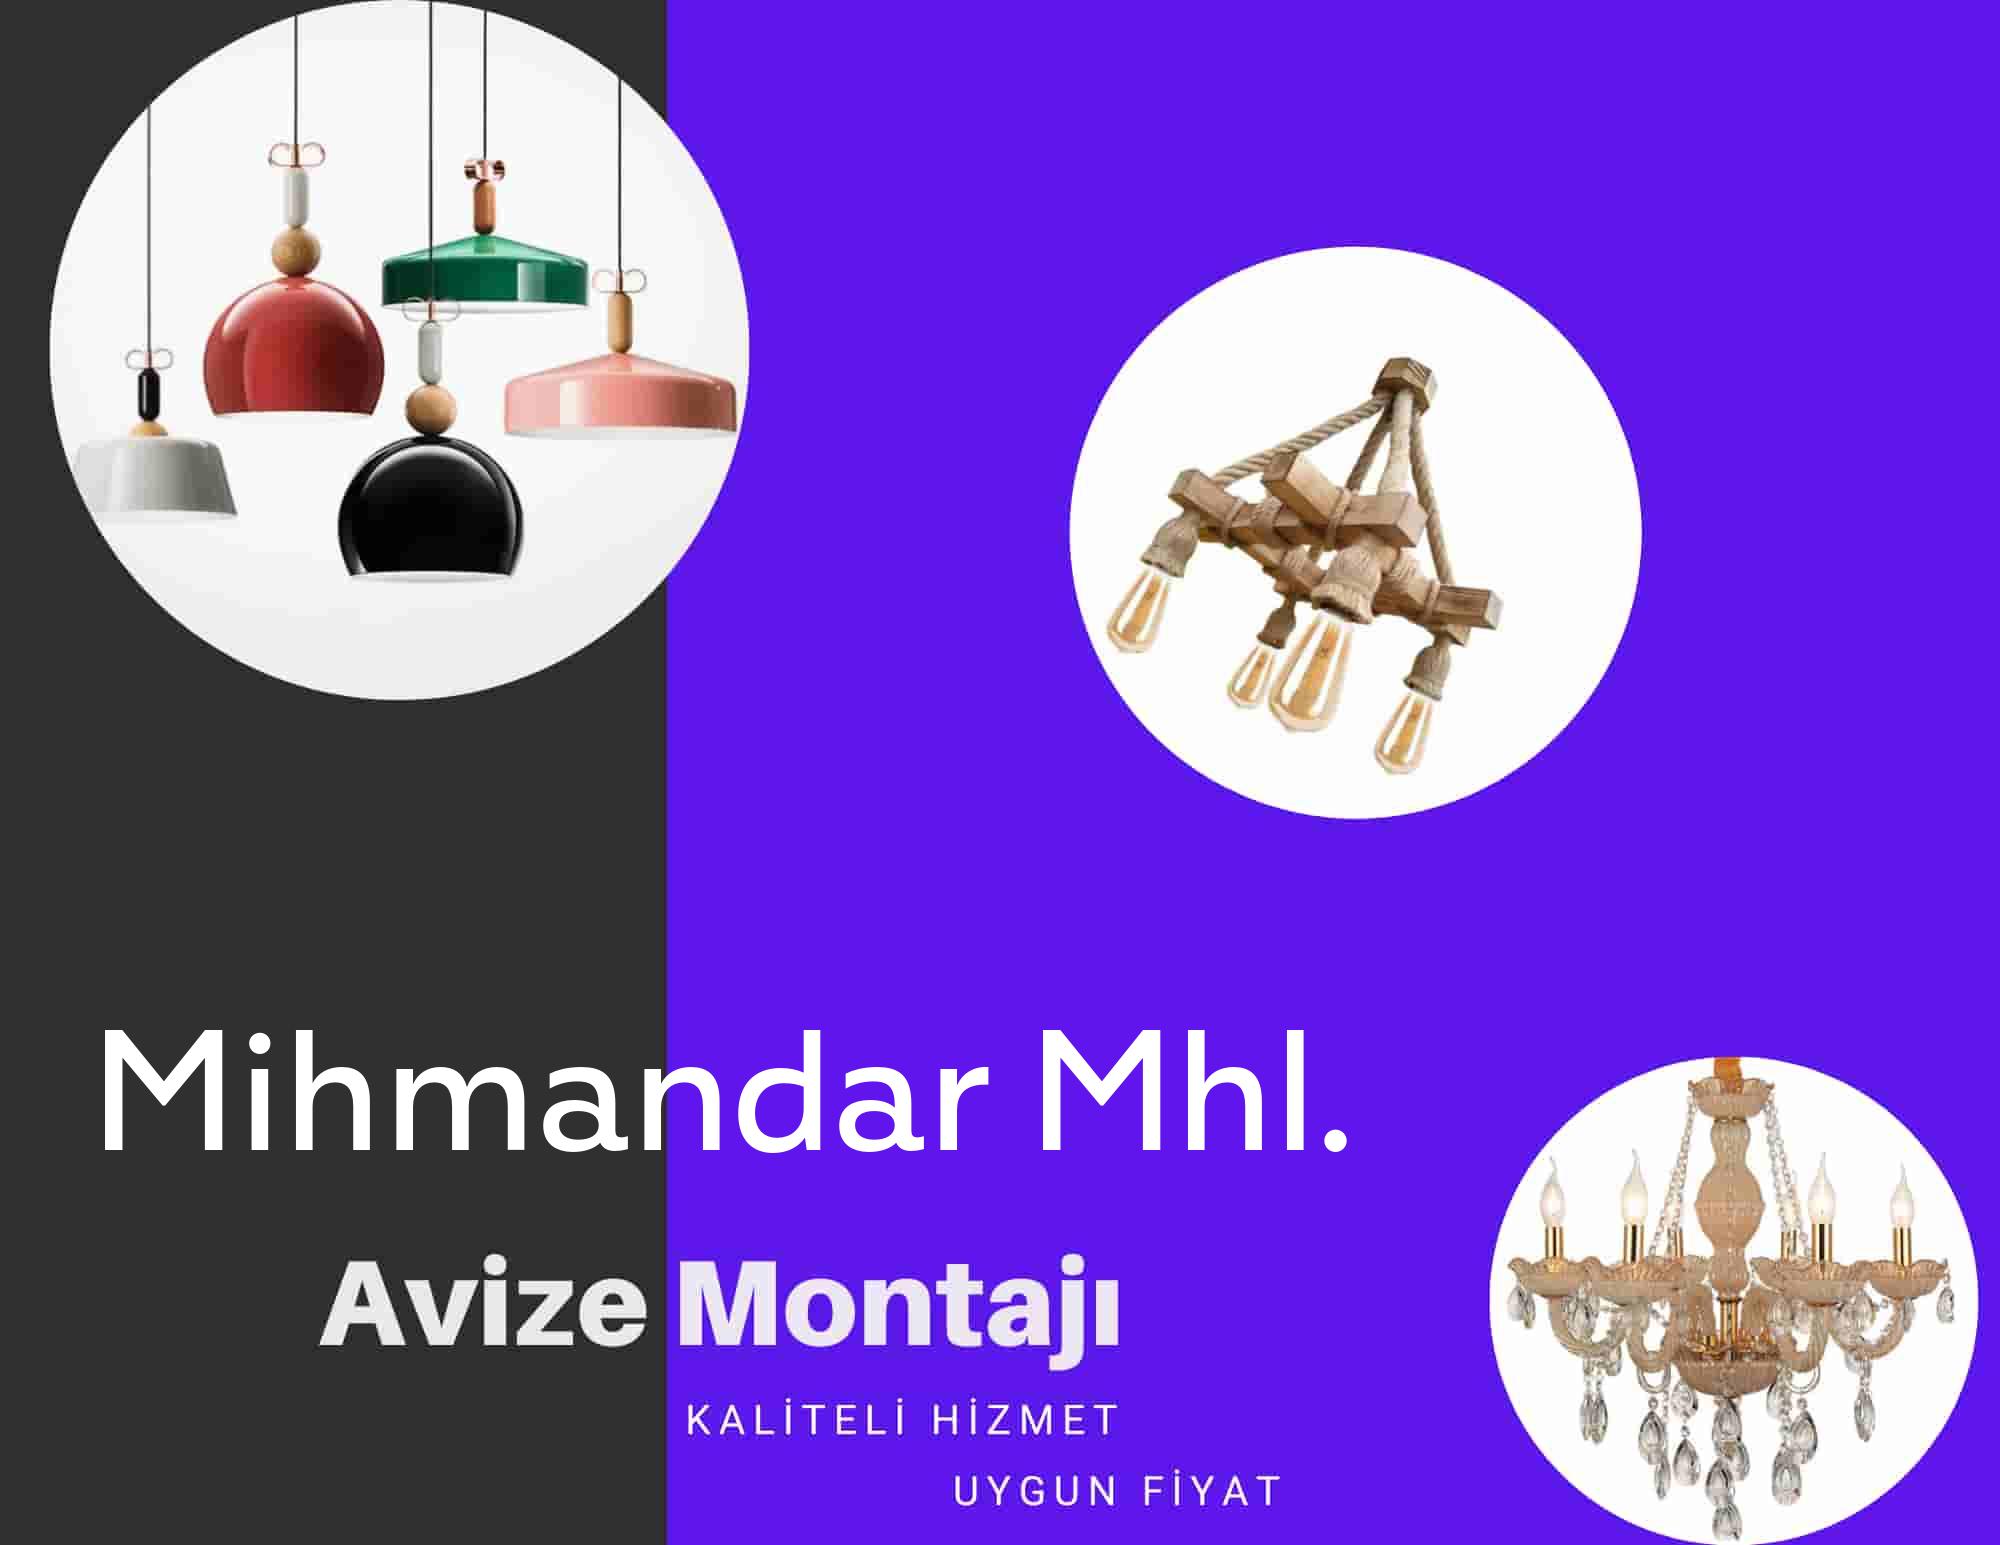 Mihmandar Mhl.de avize montajı yapan yerler arıyorsanız elektrikcicagir anında size profesyonel avize montajı ustasını yönlendirir.